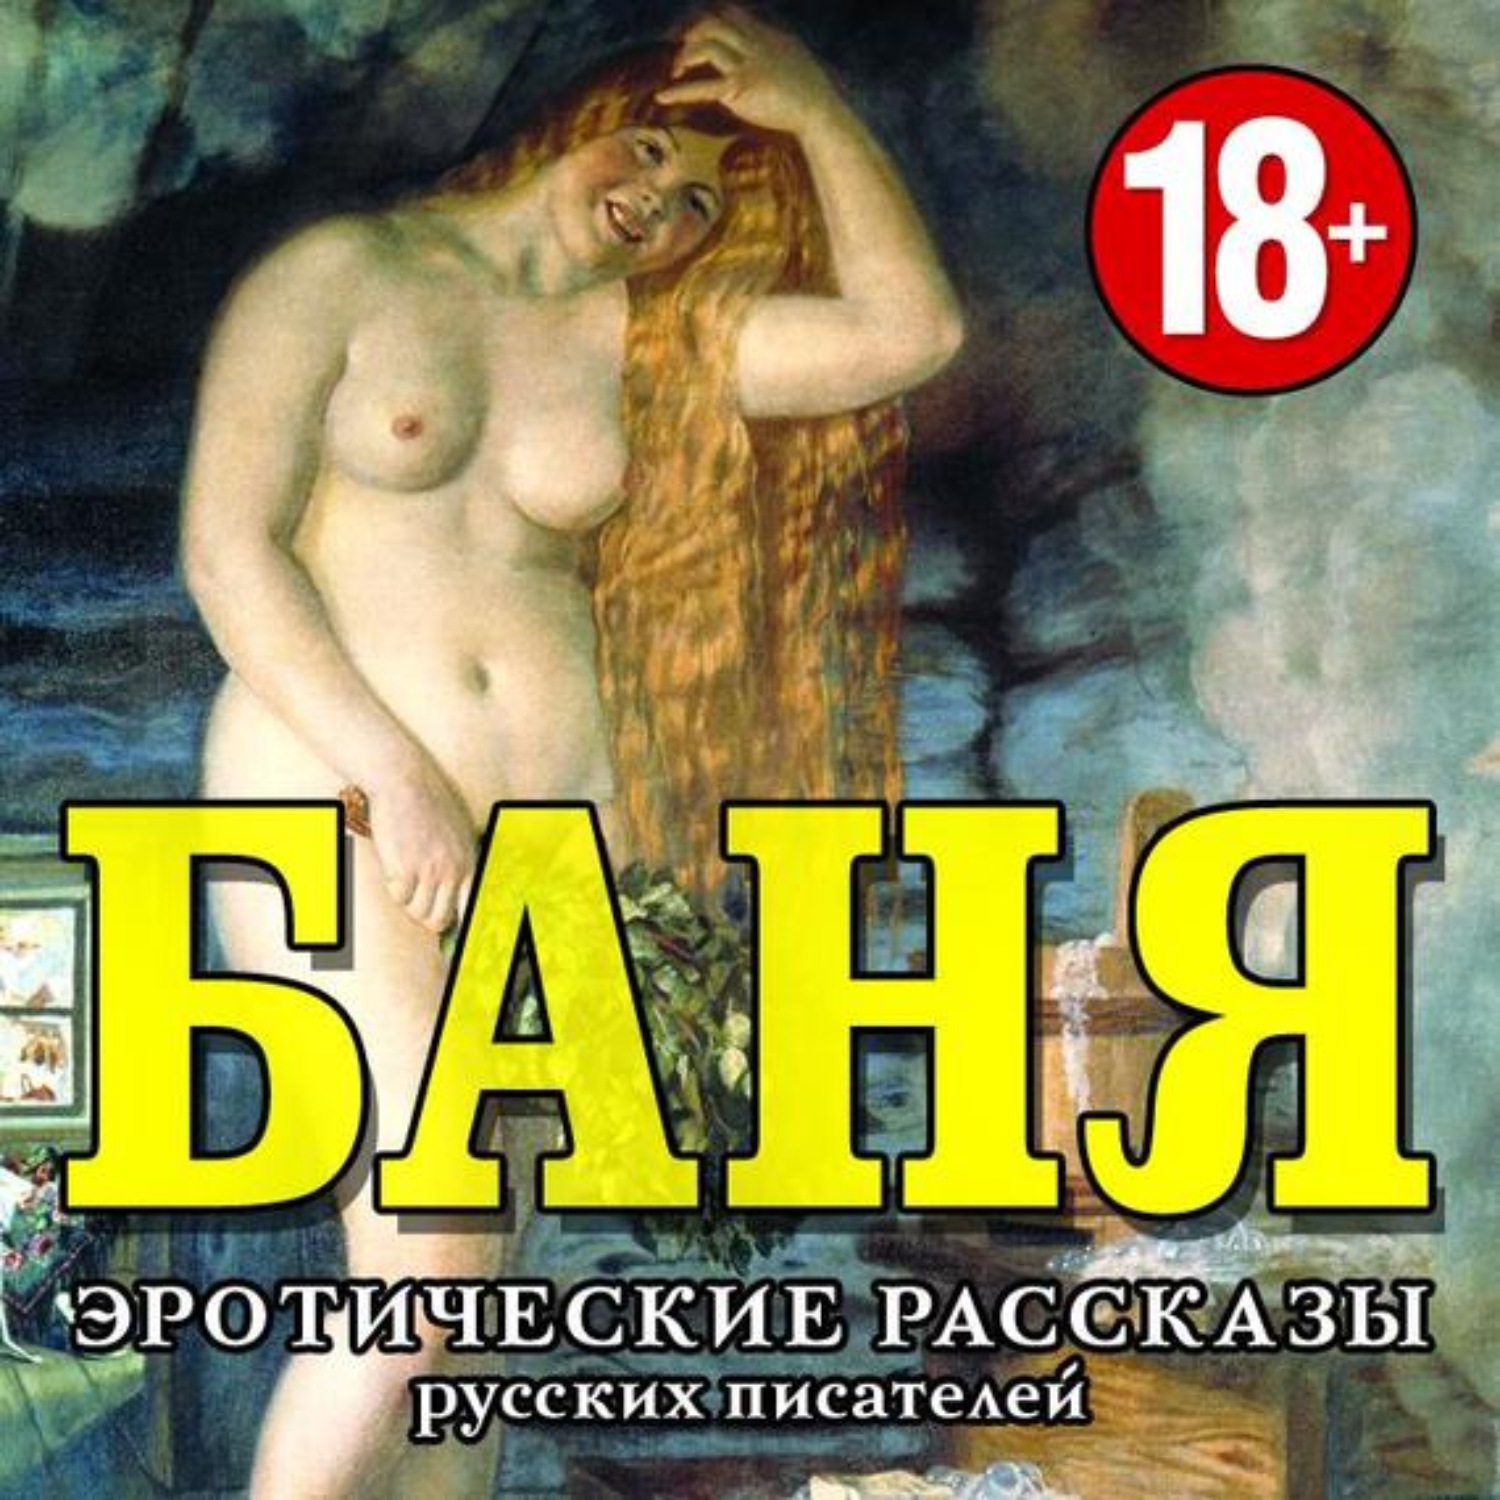 Русские эротические рассказы